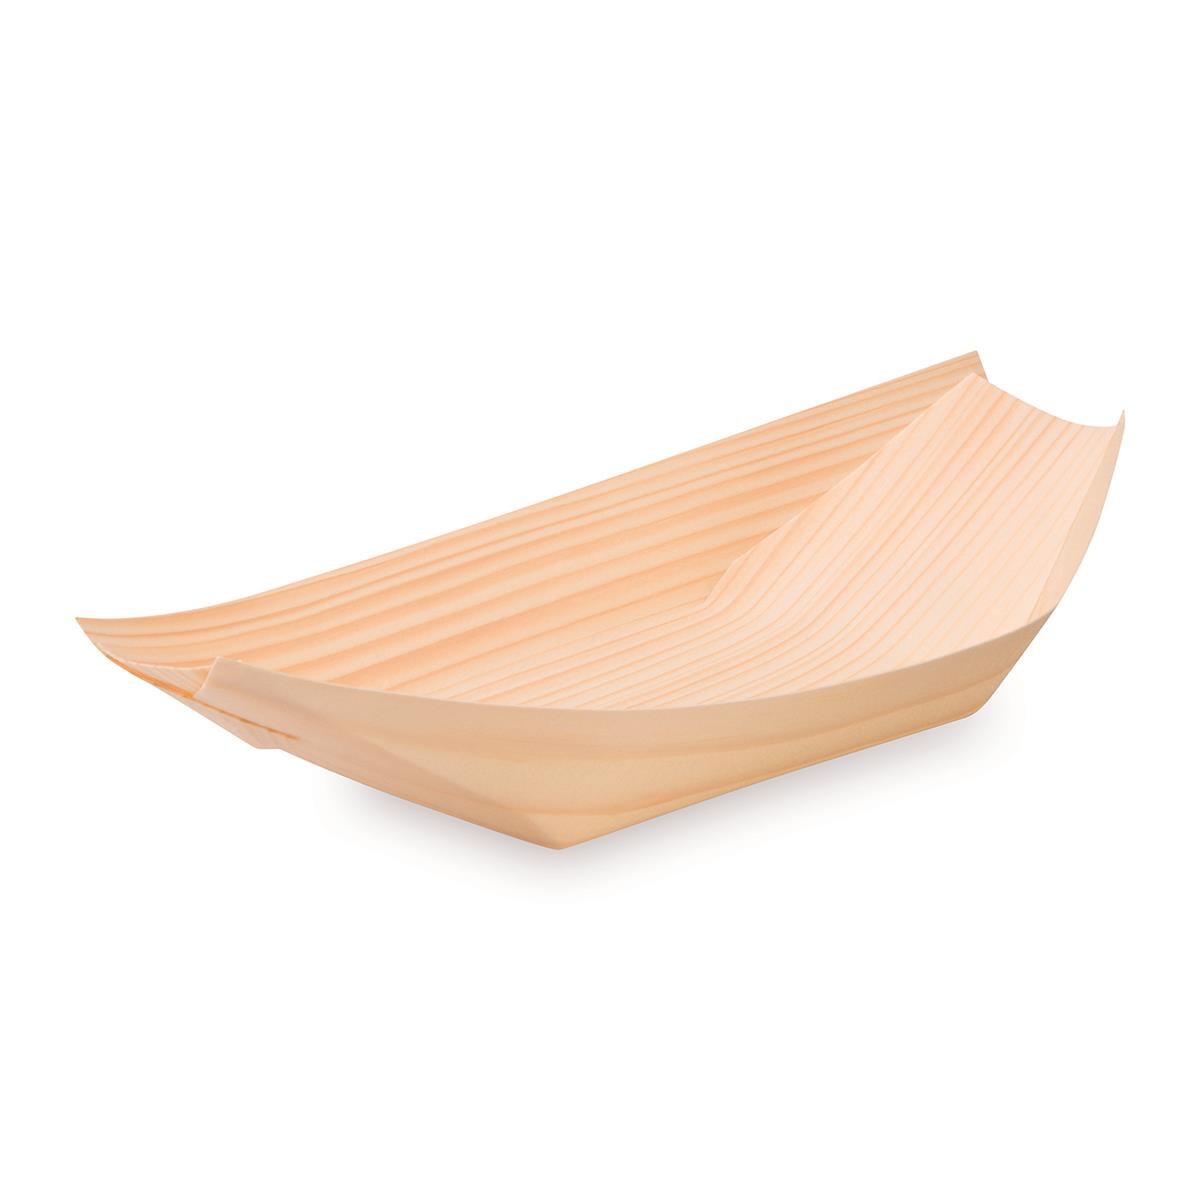 Fingerfood-Schale aus Holz Schiffchen 21,5 x 11 cm - 100 Stück